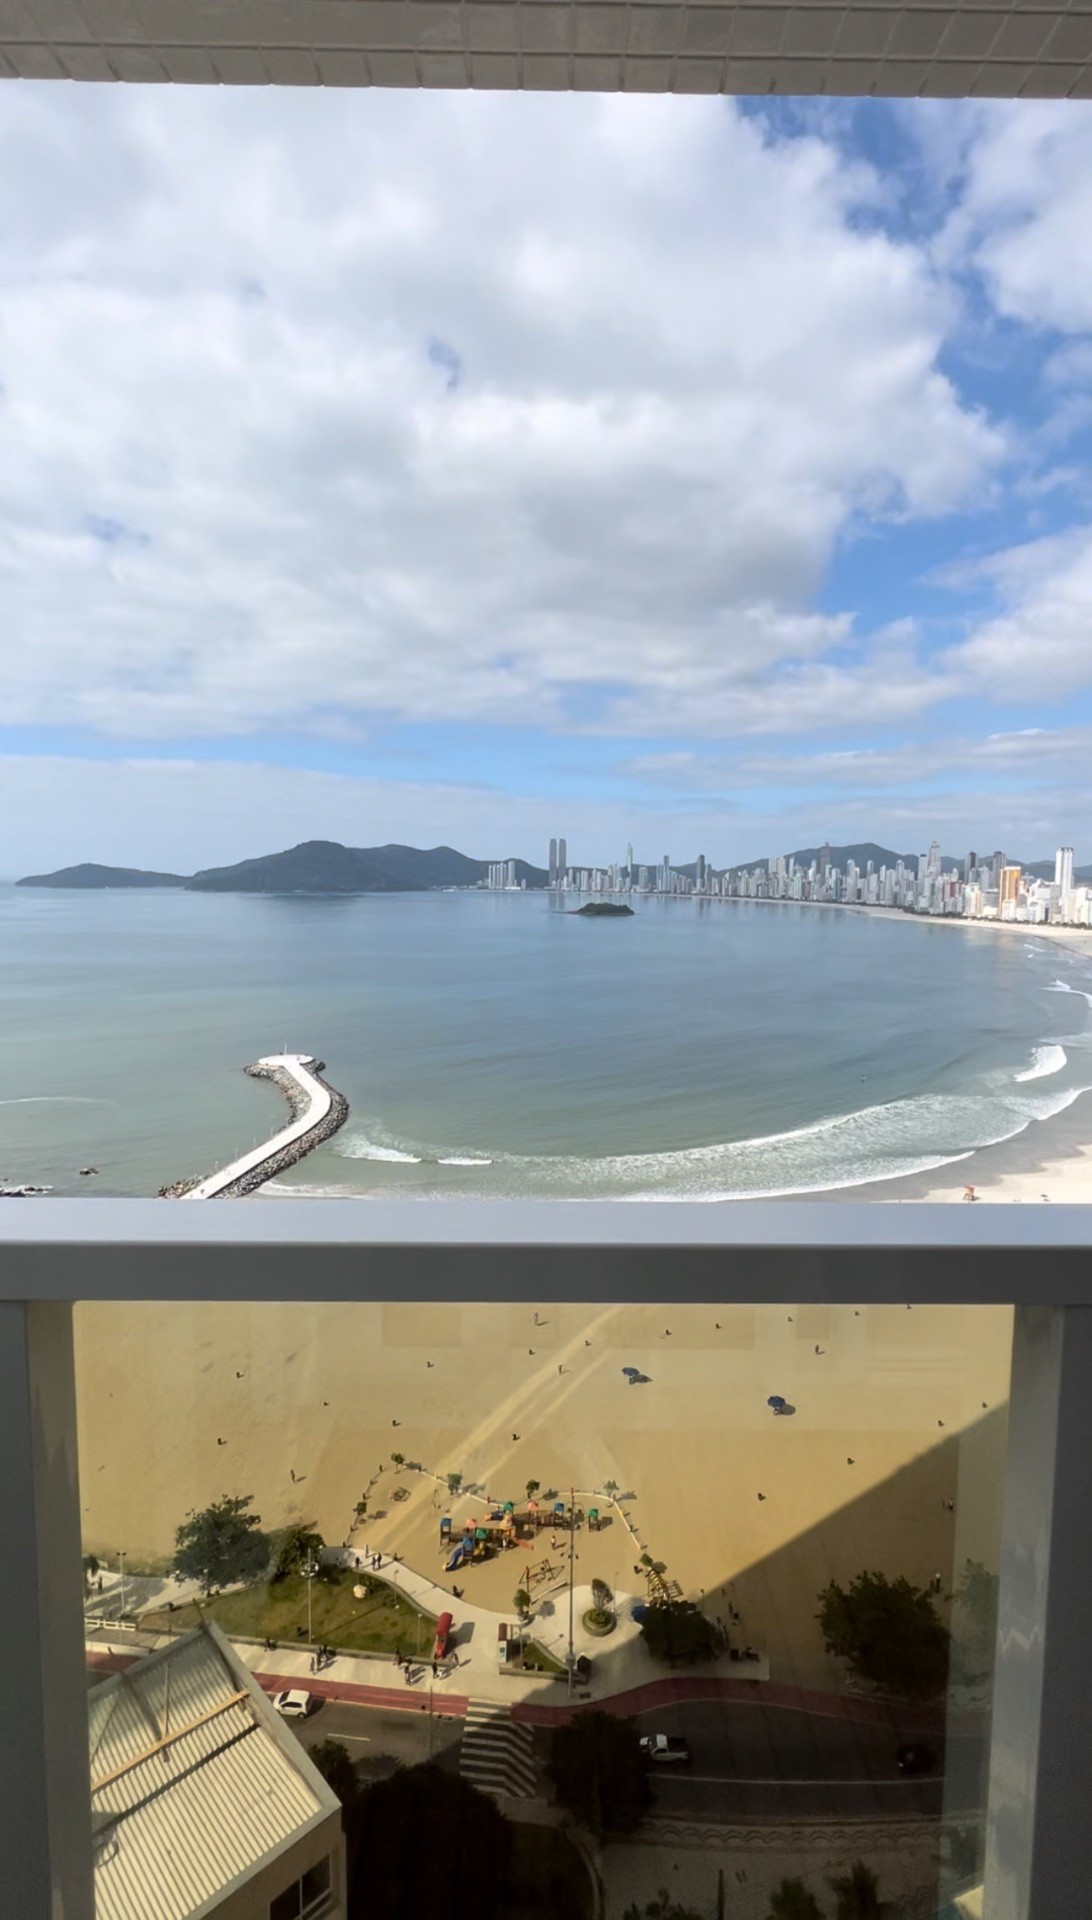 Apartamento Alto Padrão Mobiliado Equipado e Decorado, Vista Panorâmica do Mar de Balneário Camboriú - SC